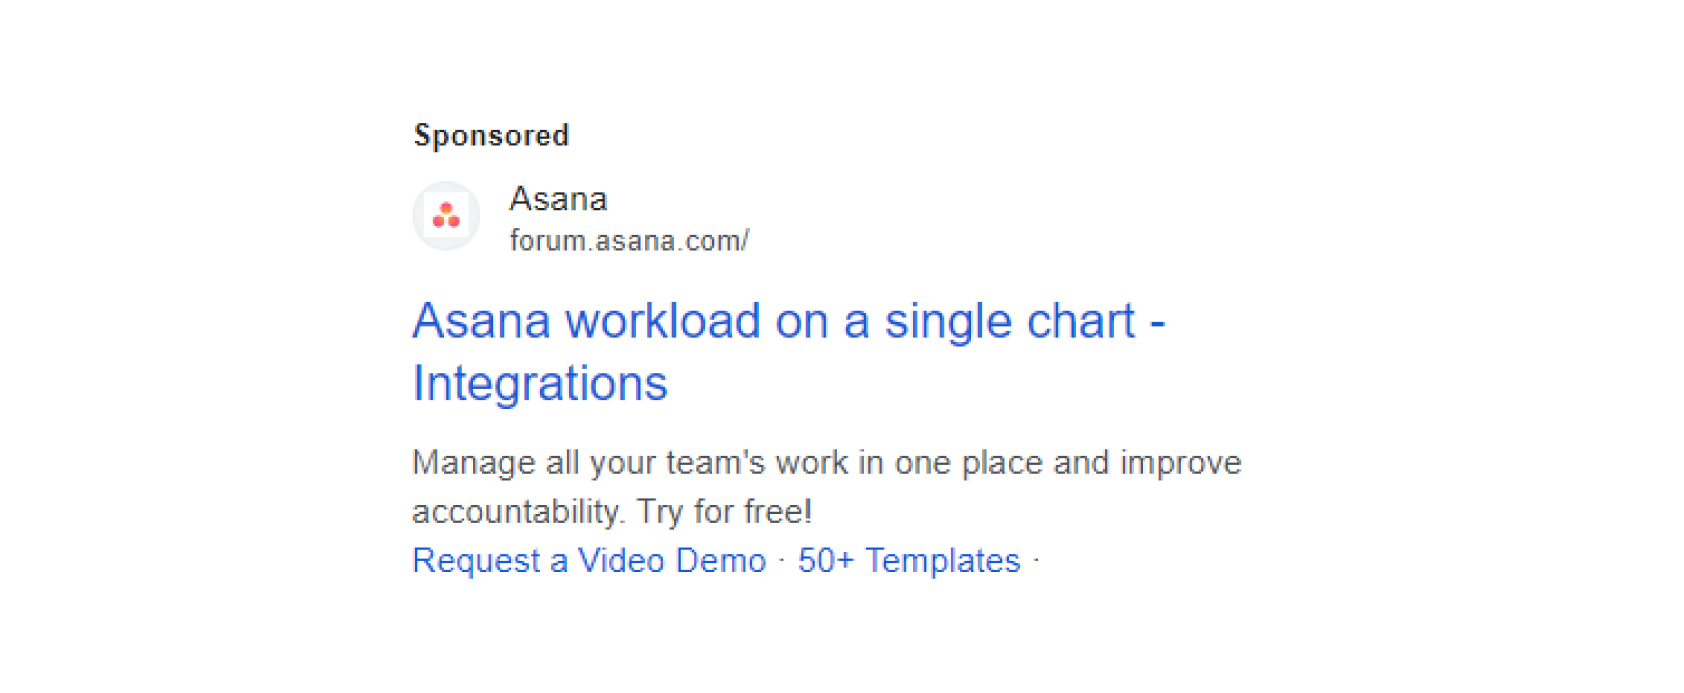 Asana Google text ad